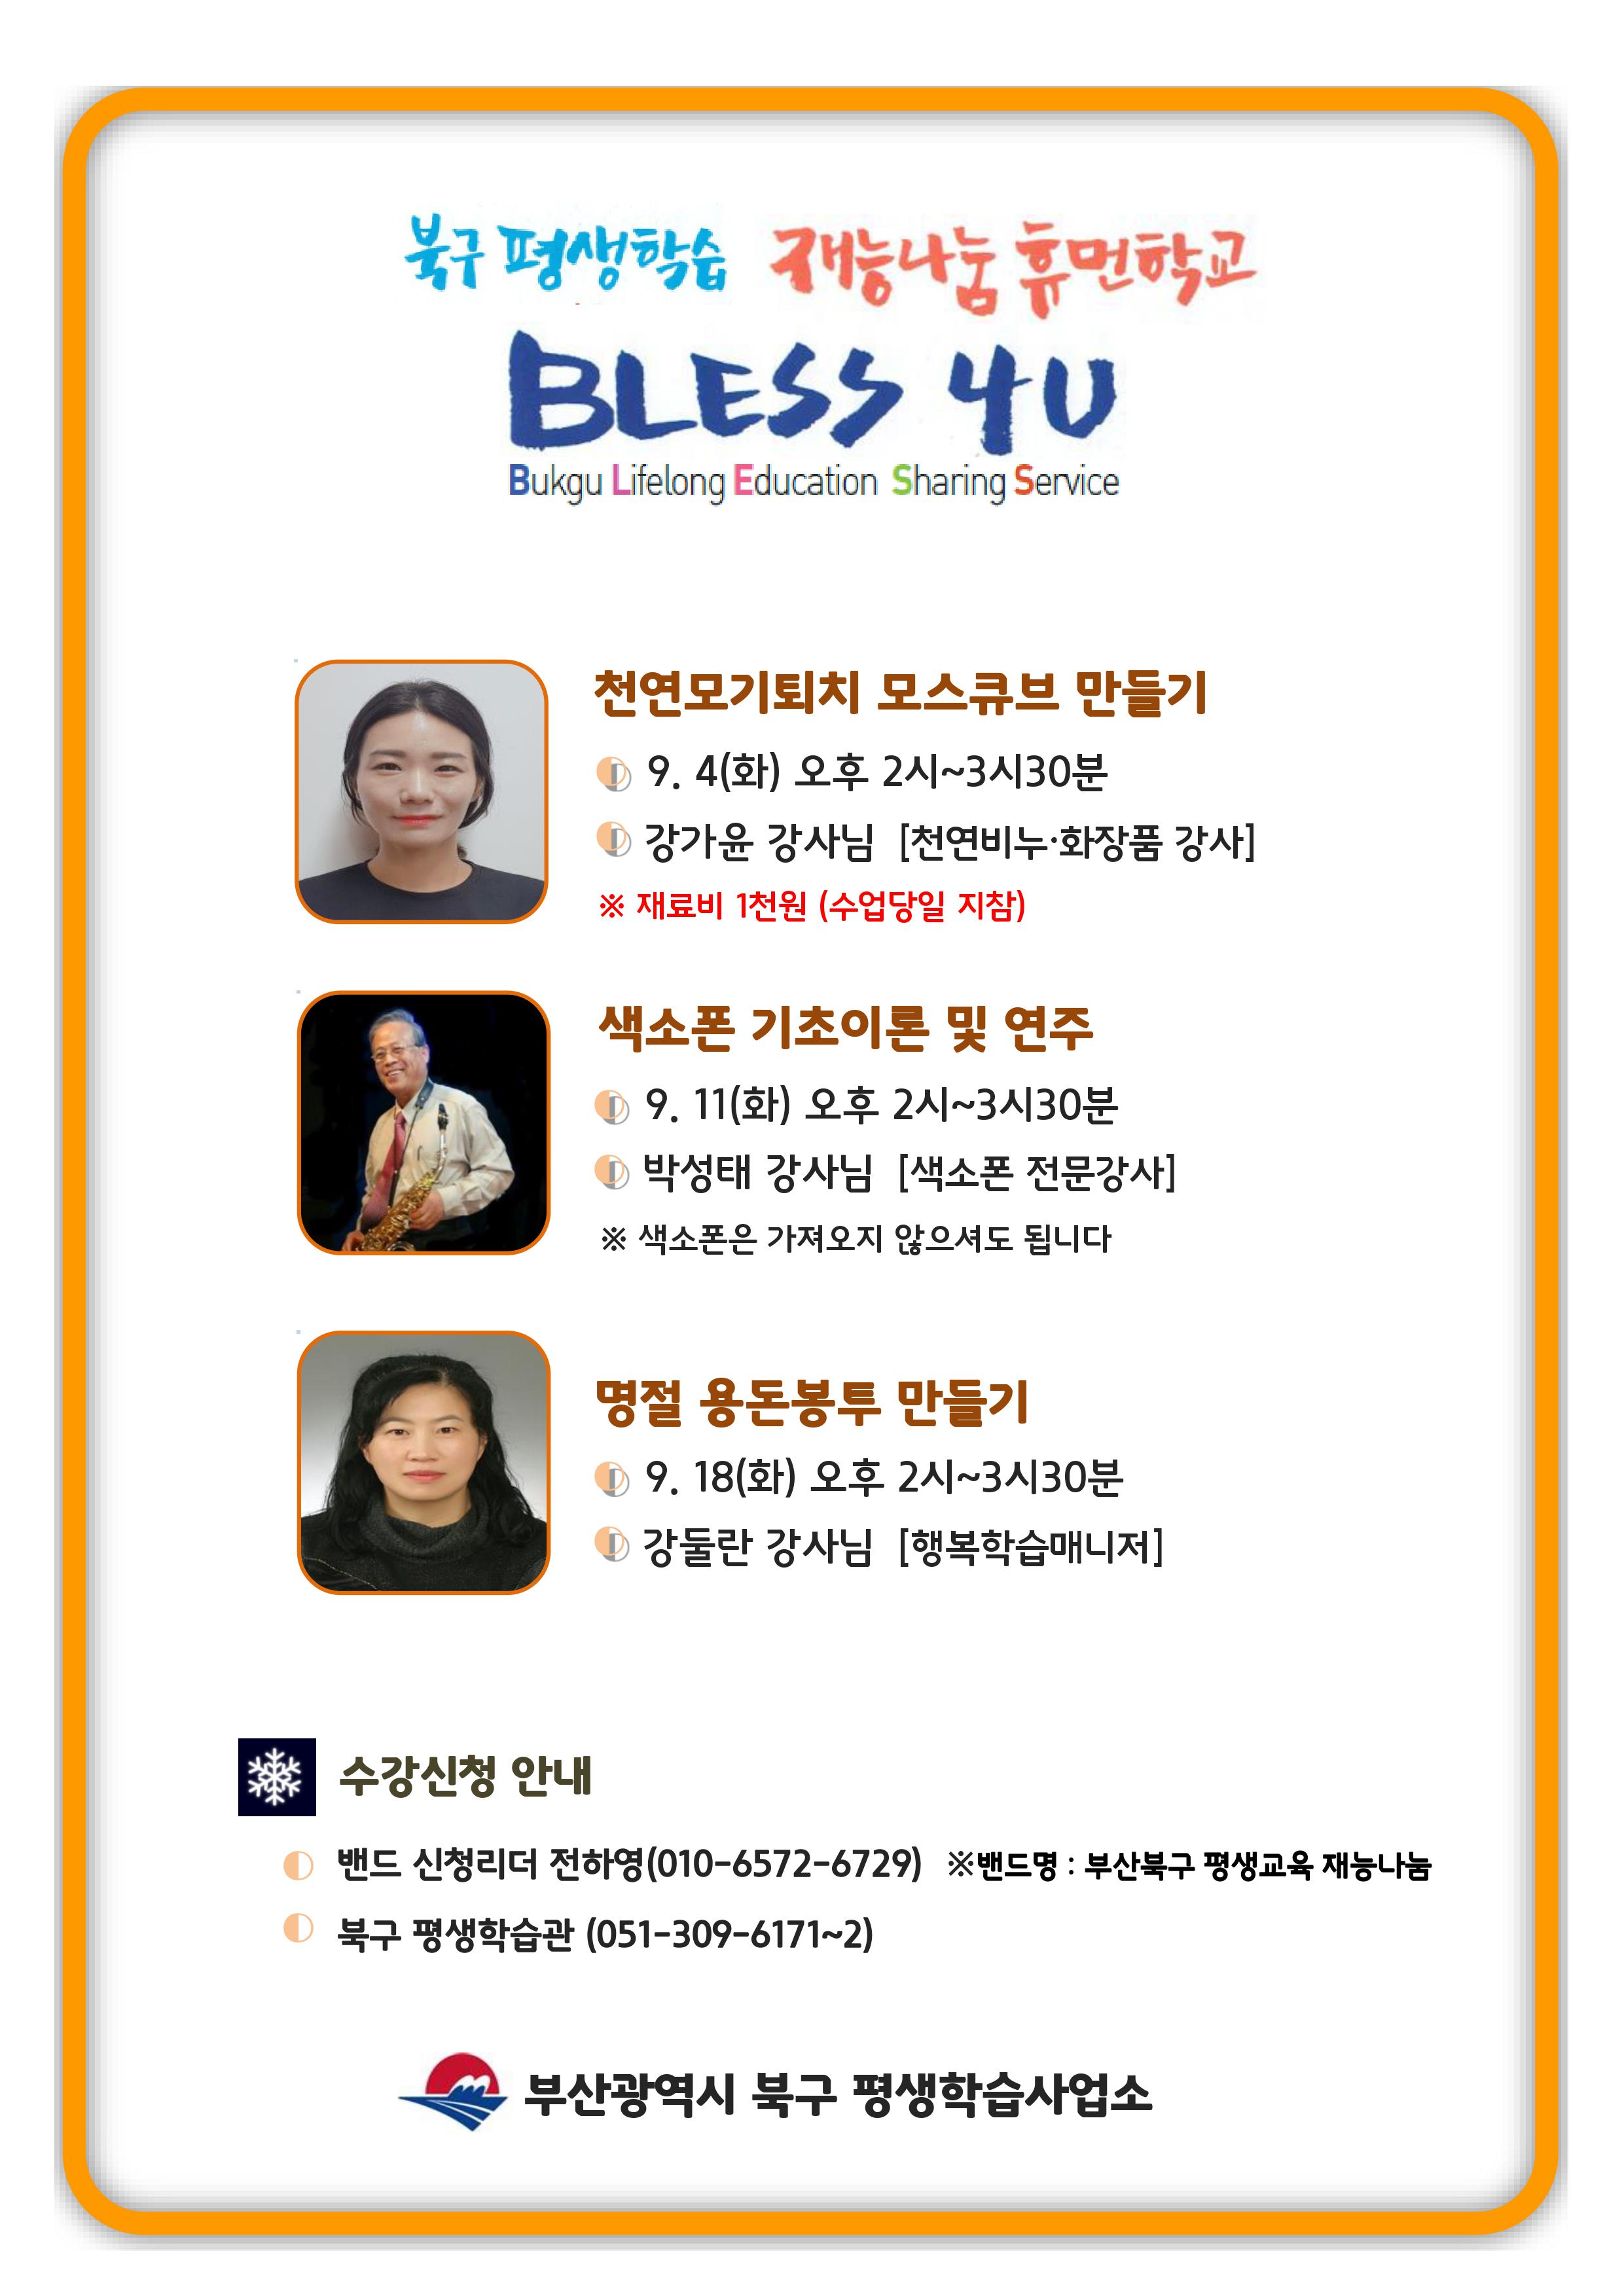 9월 재능나눔 강의 BLESS 4U 1회특강 강의안내